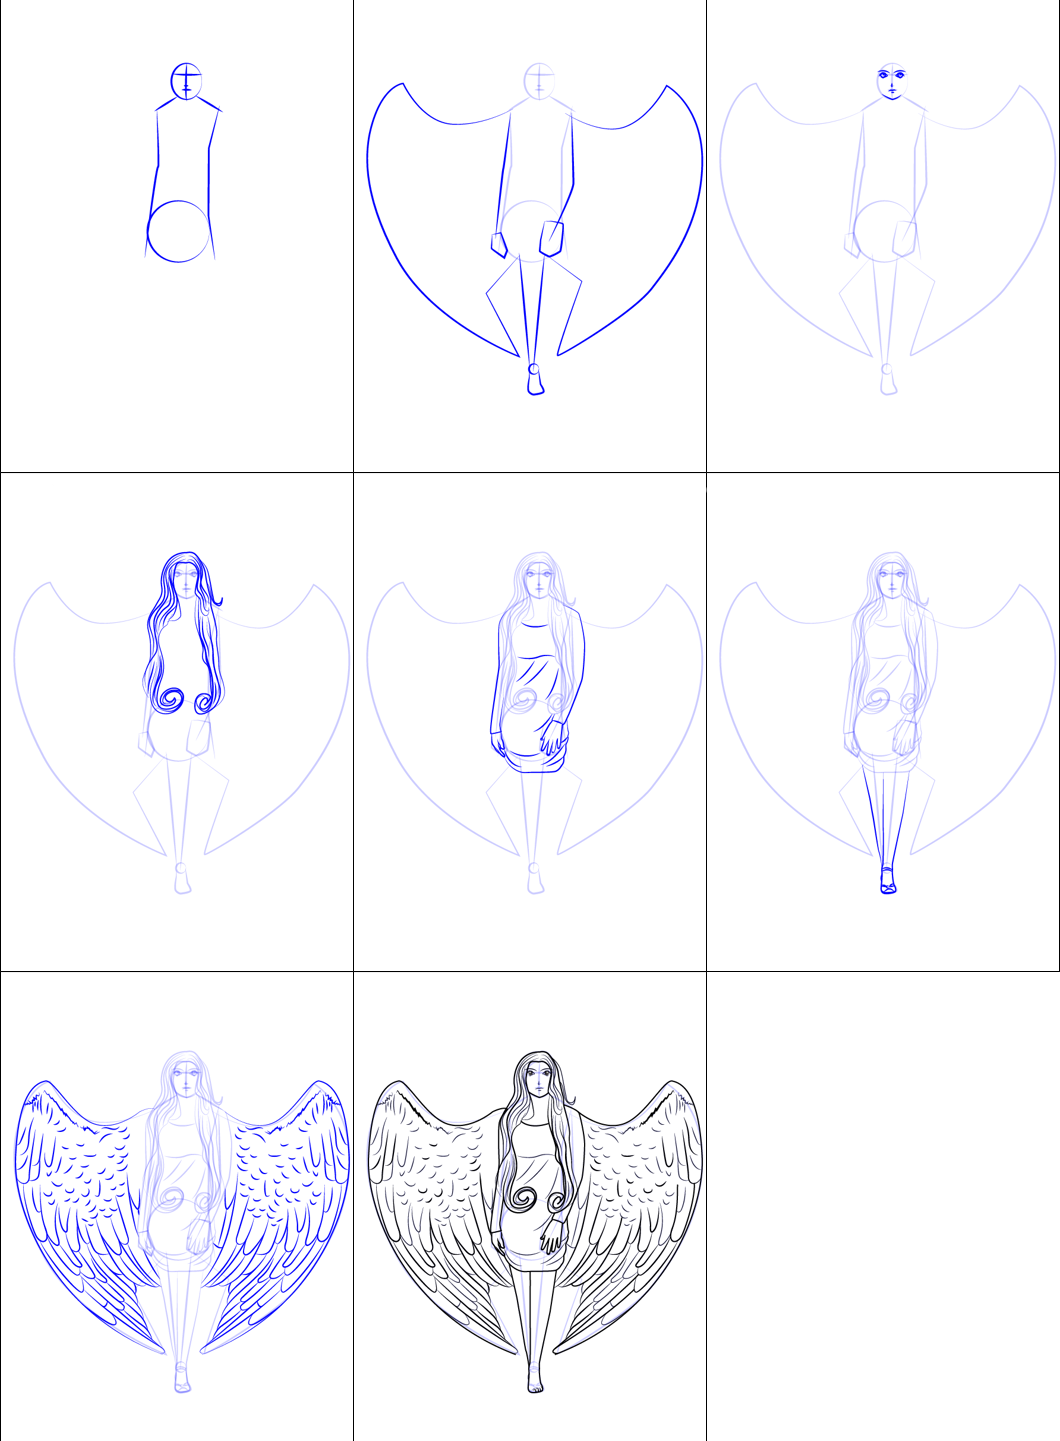 Dessiner des anges simples (1) dessin